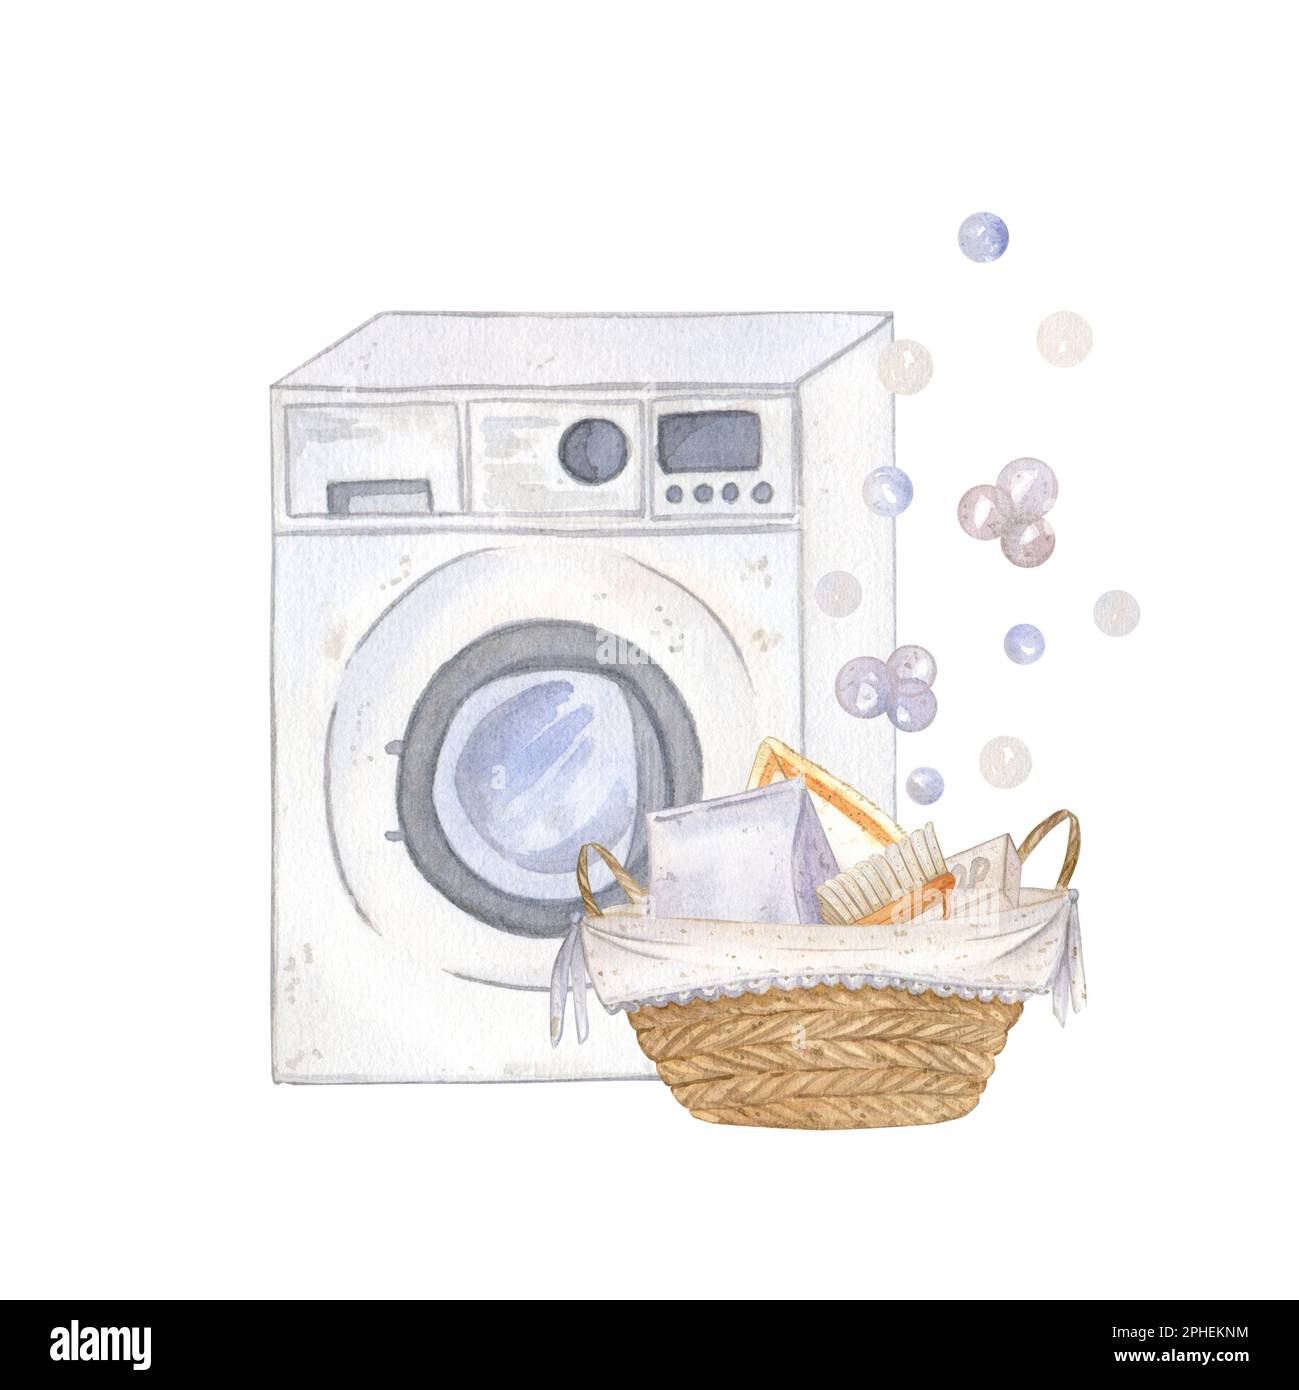 Composition avec machine à laver, panier en osier, poudre, savon, brosse et bulles de savon. Illustration aquarelle, isoler. Adapté pour l'emballage, post-c Banque D'Images